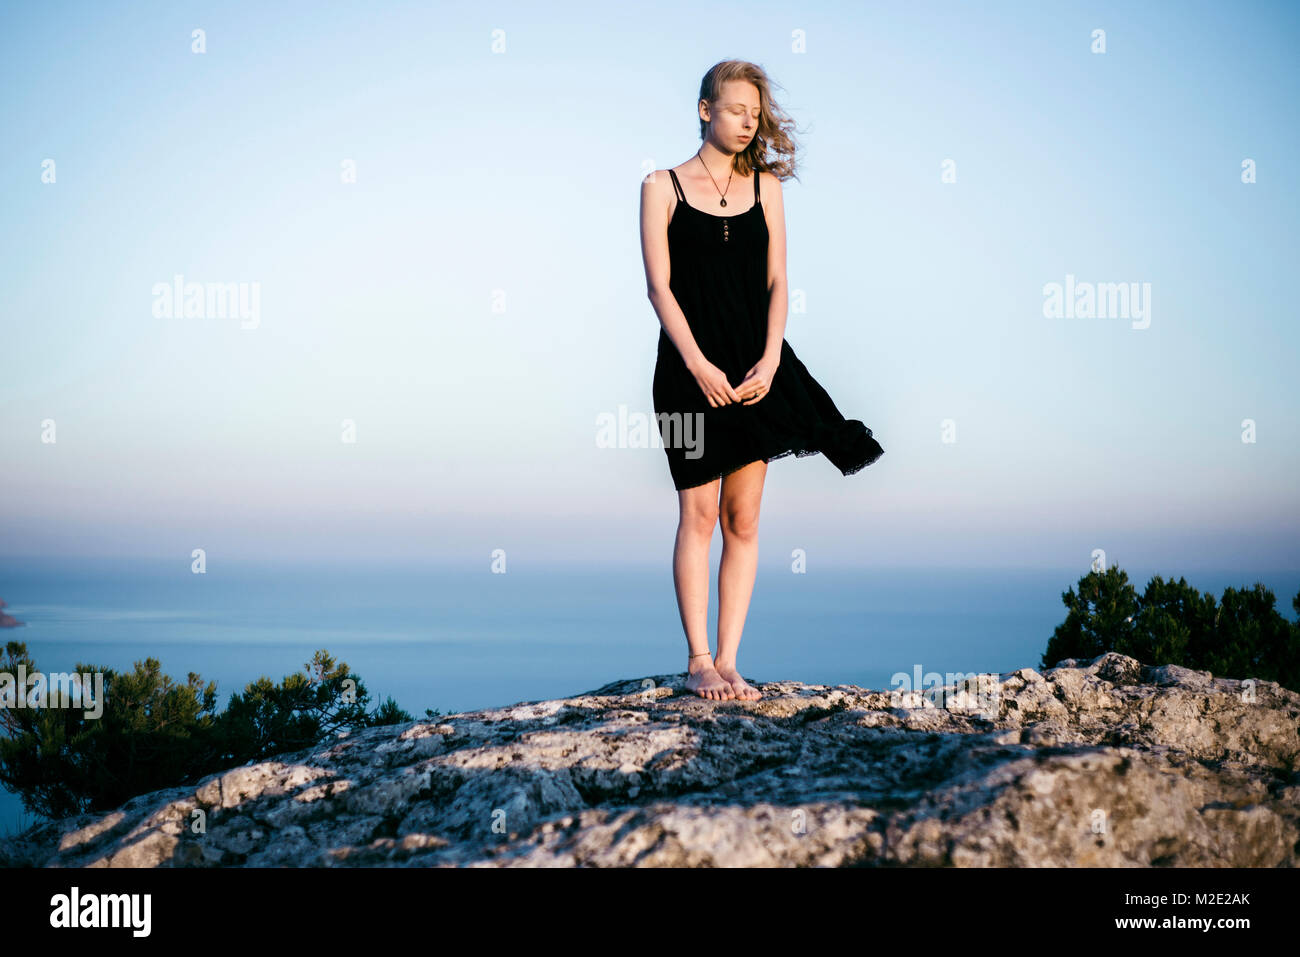 Wind blowing dress of Caucasian woman standing on rock near ocean Stock Photo